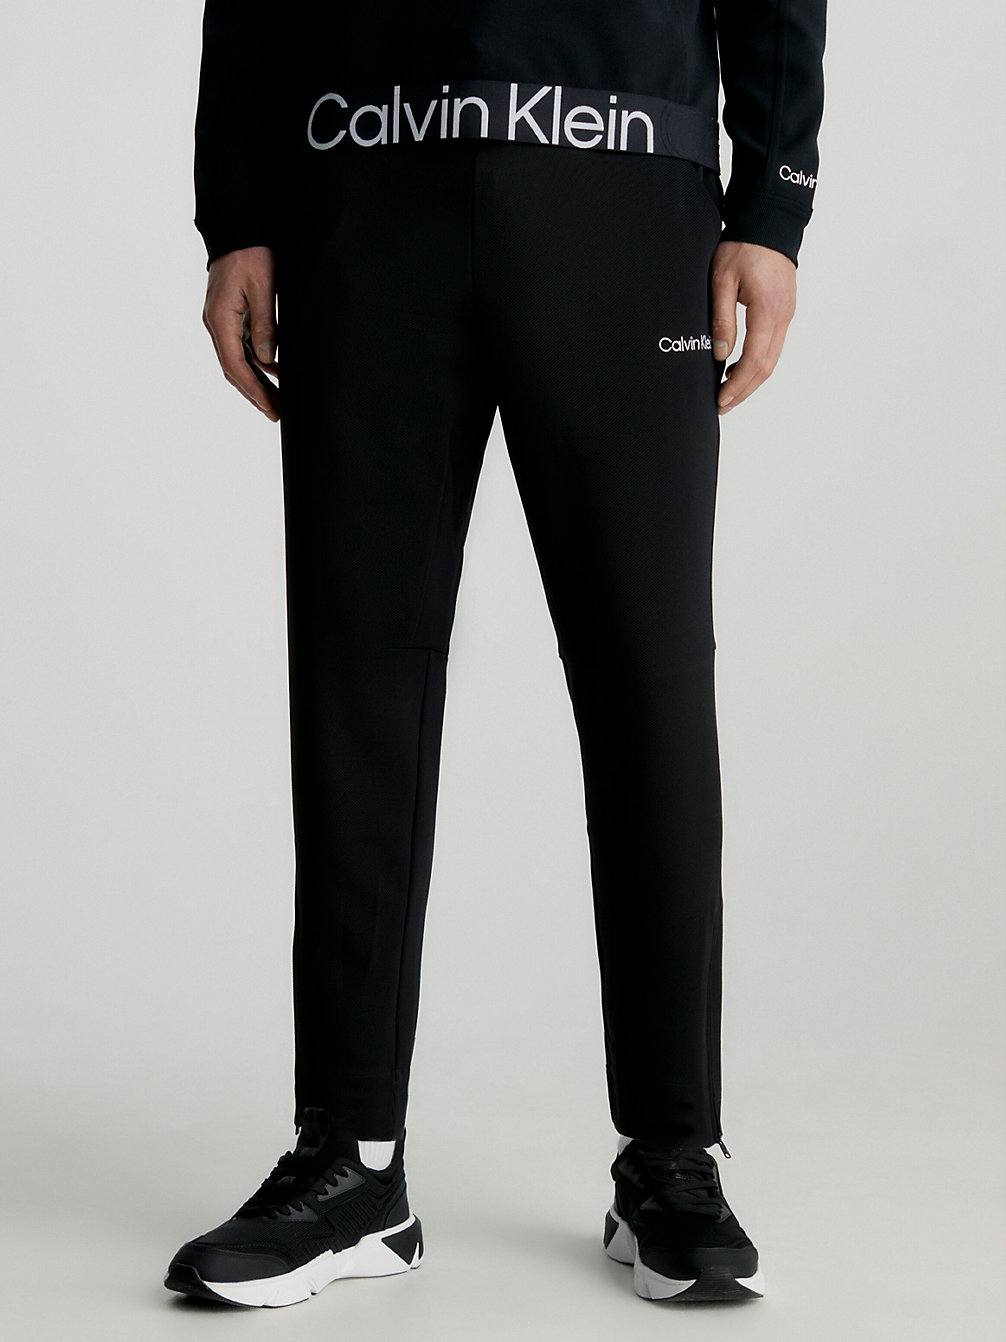 BLACK BEAUTY > Spodnie Dresowe Ze Stretchem > undefined Mężczyźni - Calvin Klein